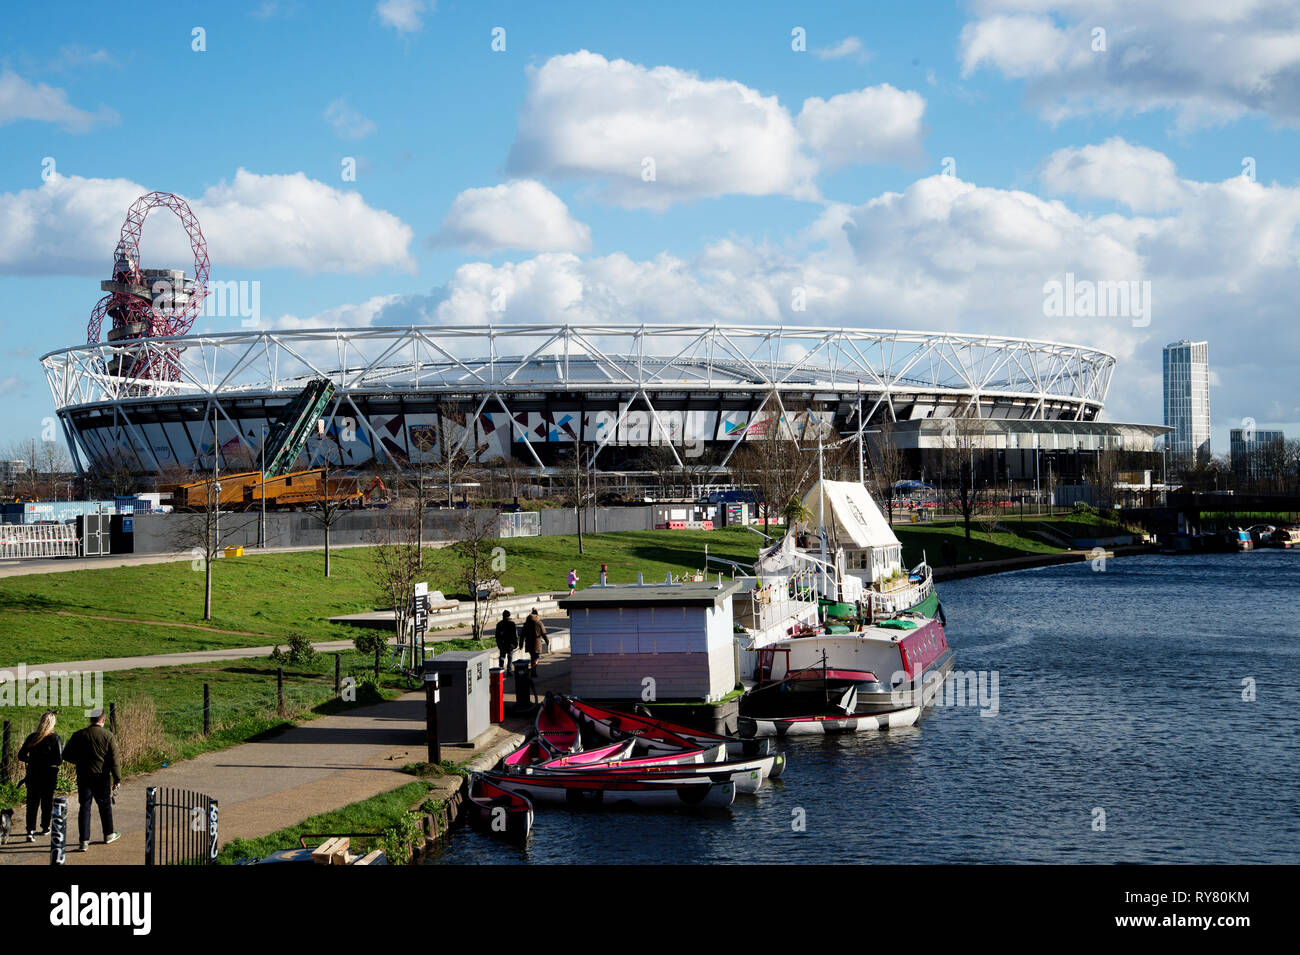 Londres. Hackney. Lea canal de navigation avec des kayaks, péniche bar et une vue sur le stade olympique. Banque D'Images